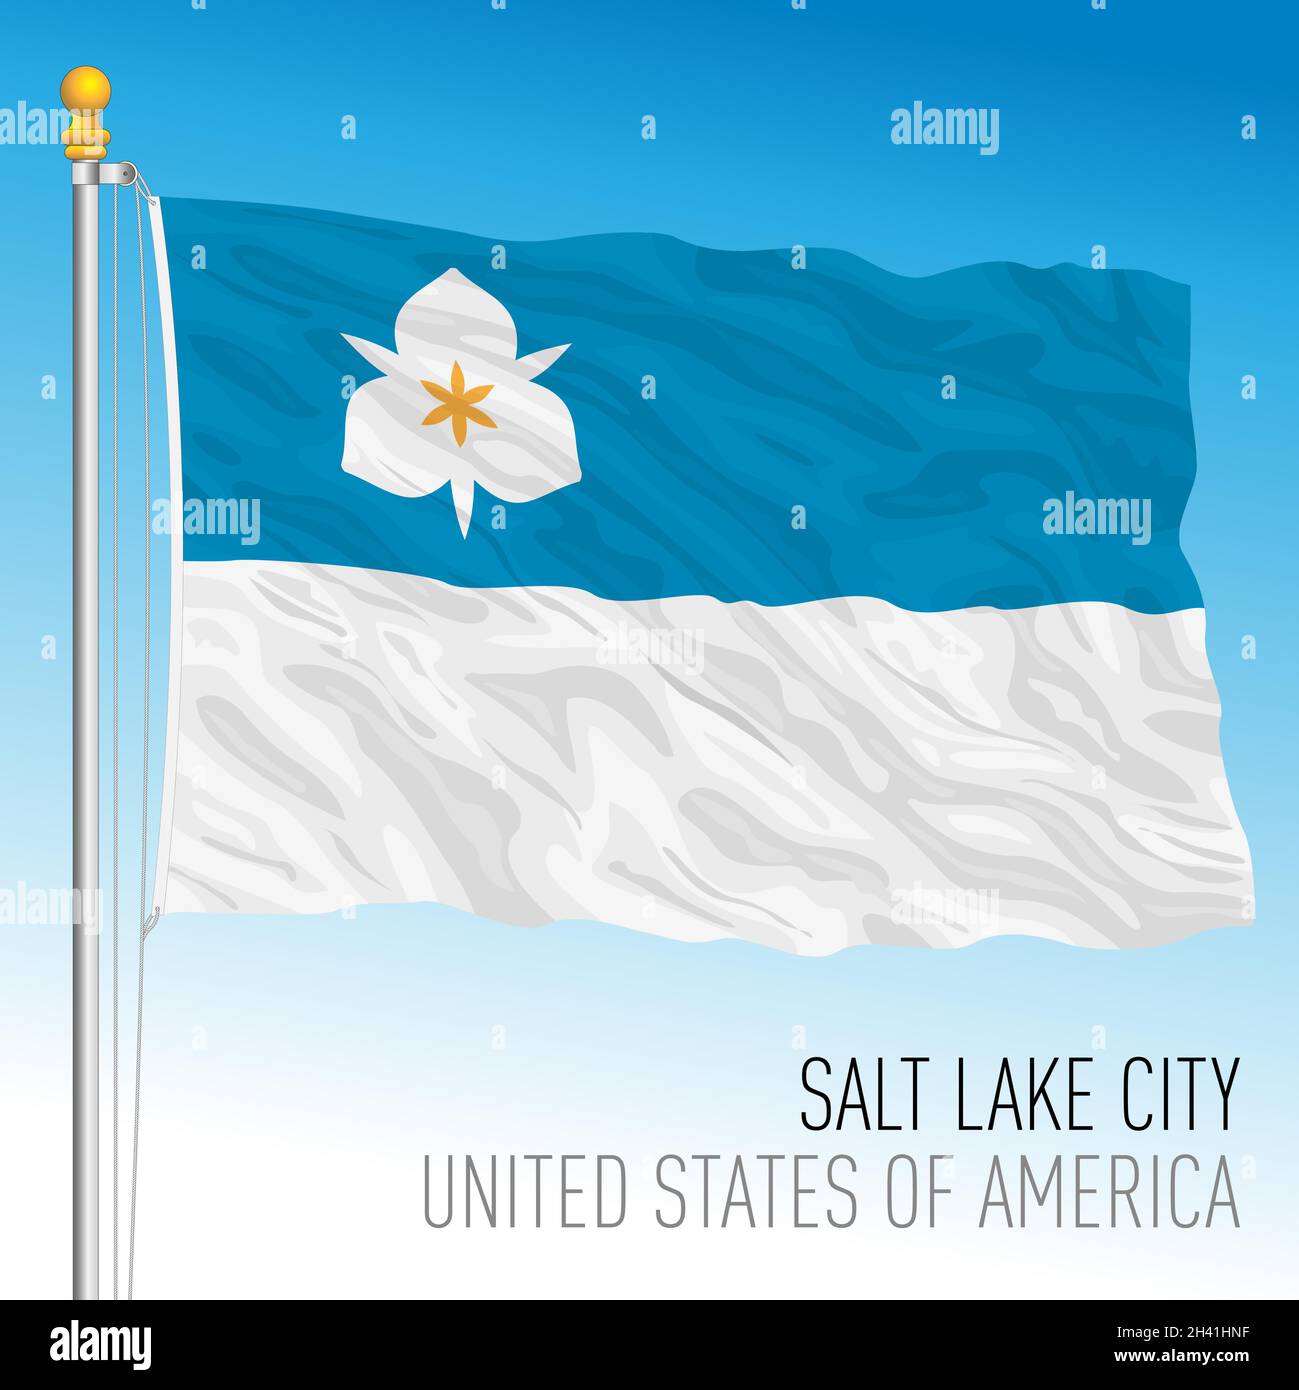 Salt Lake City flag, Utah, United States, vector illustration Stock Vector